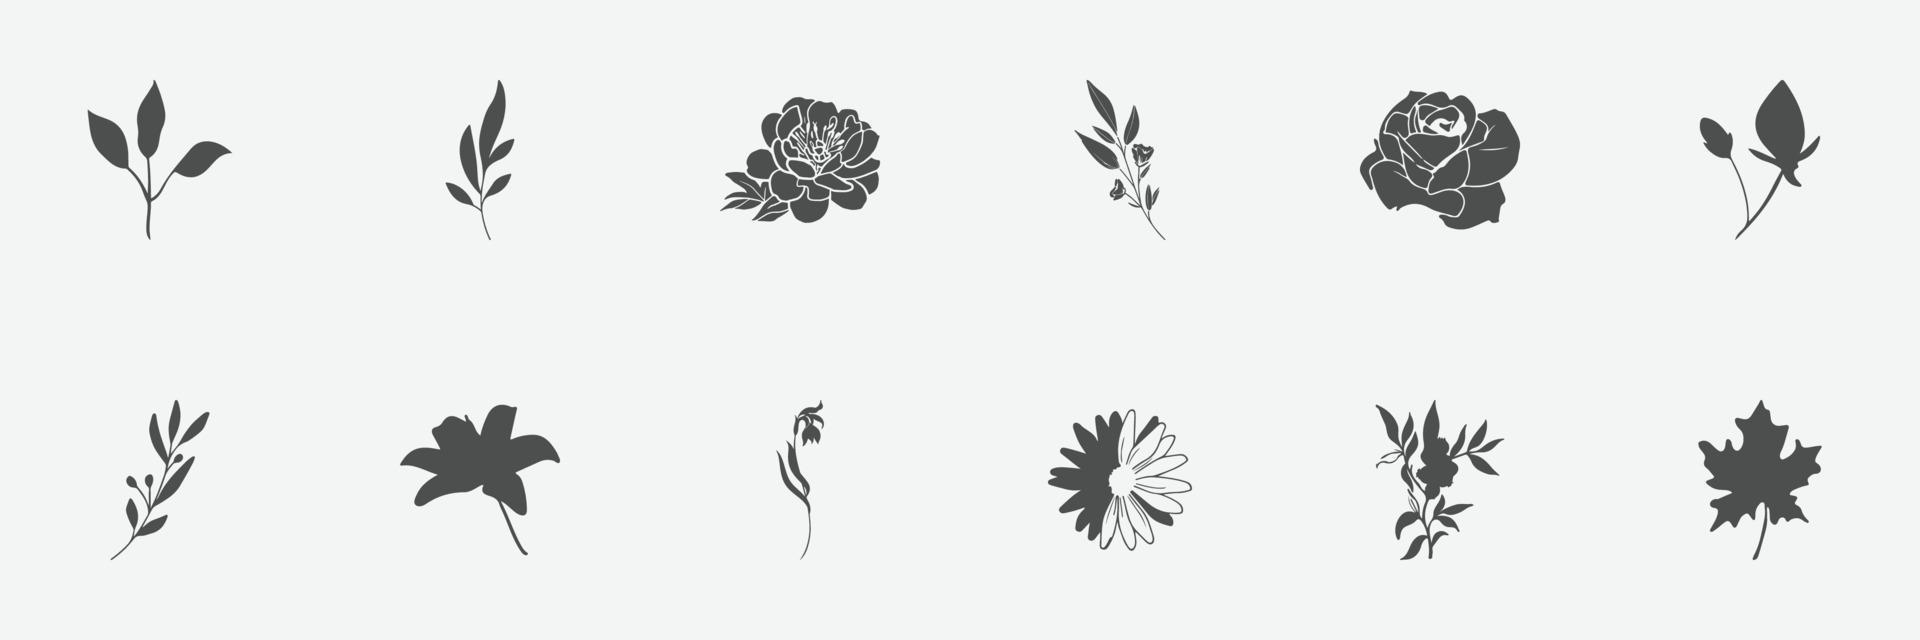 bloemen set silhouetten van planten en bloemen vector